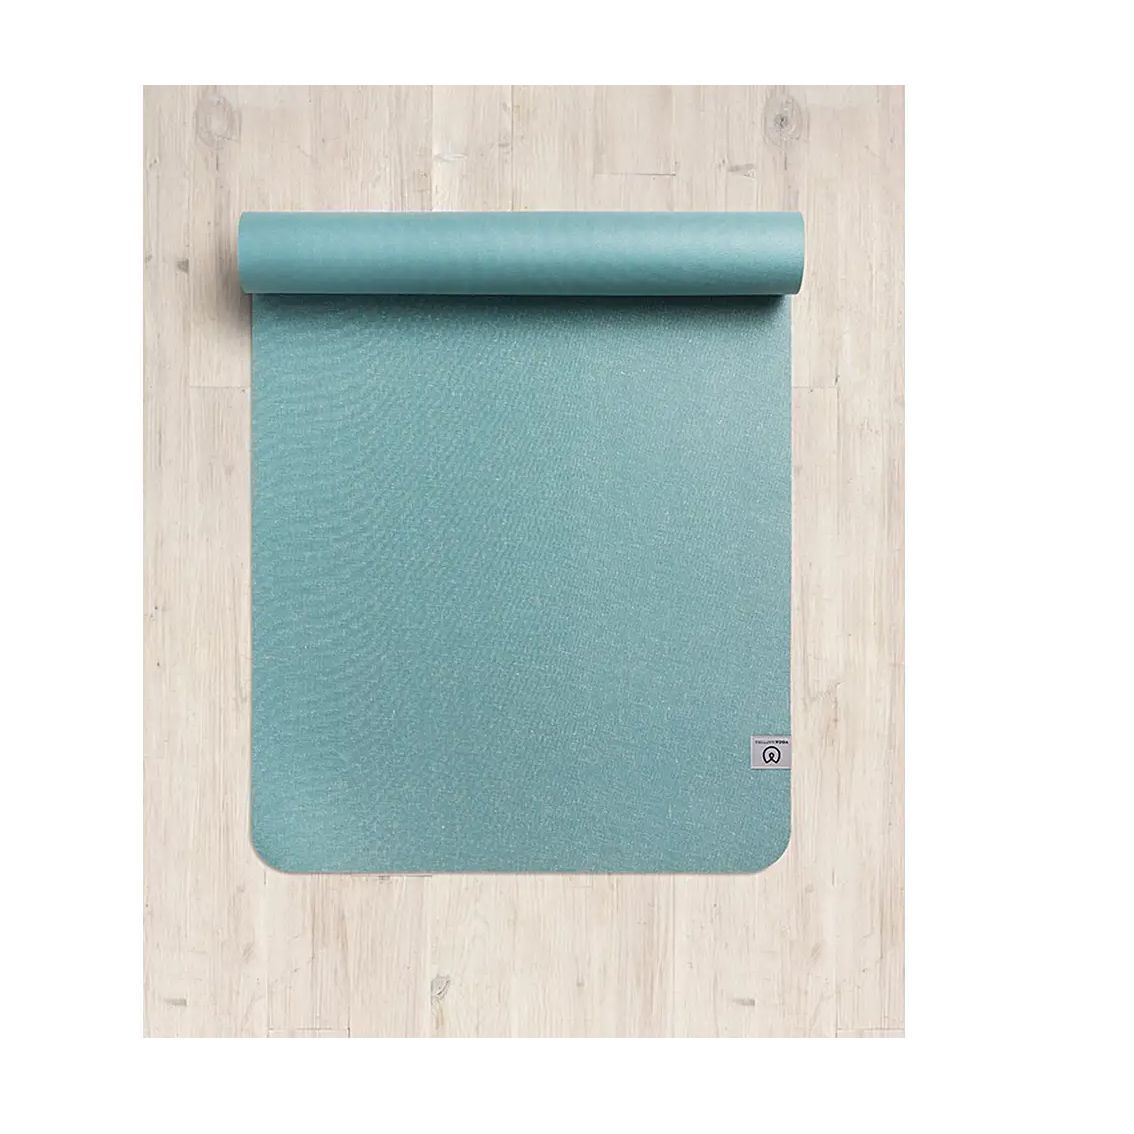 custom yoga mats uk